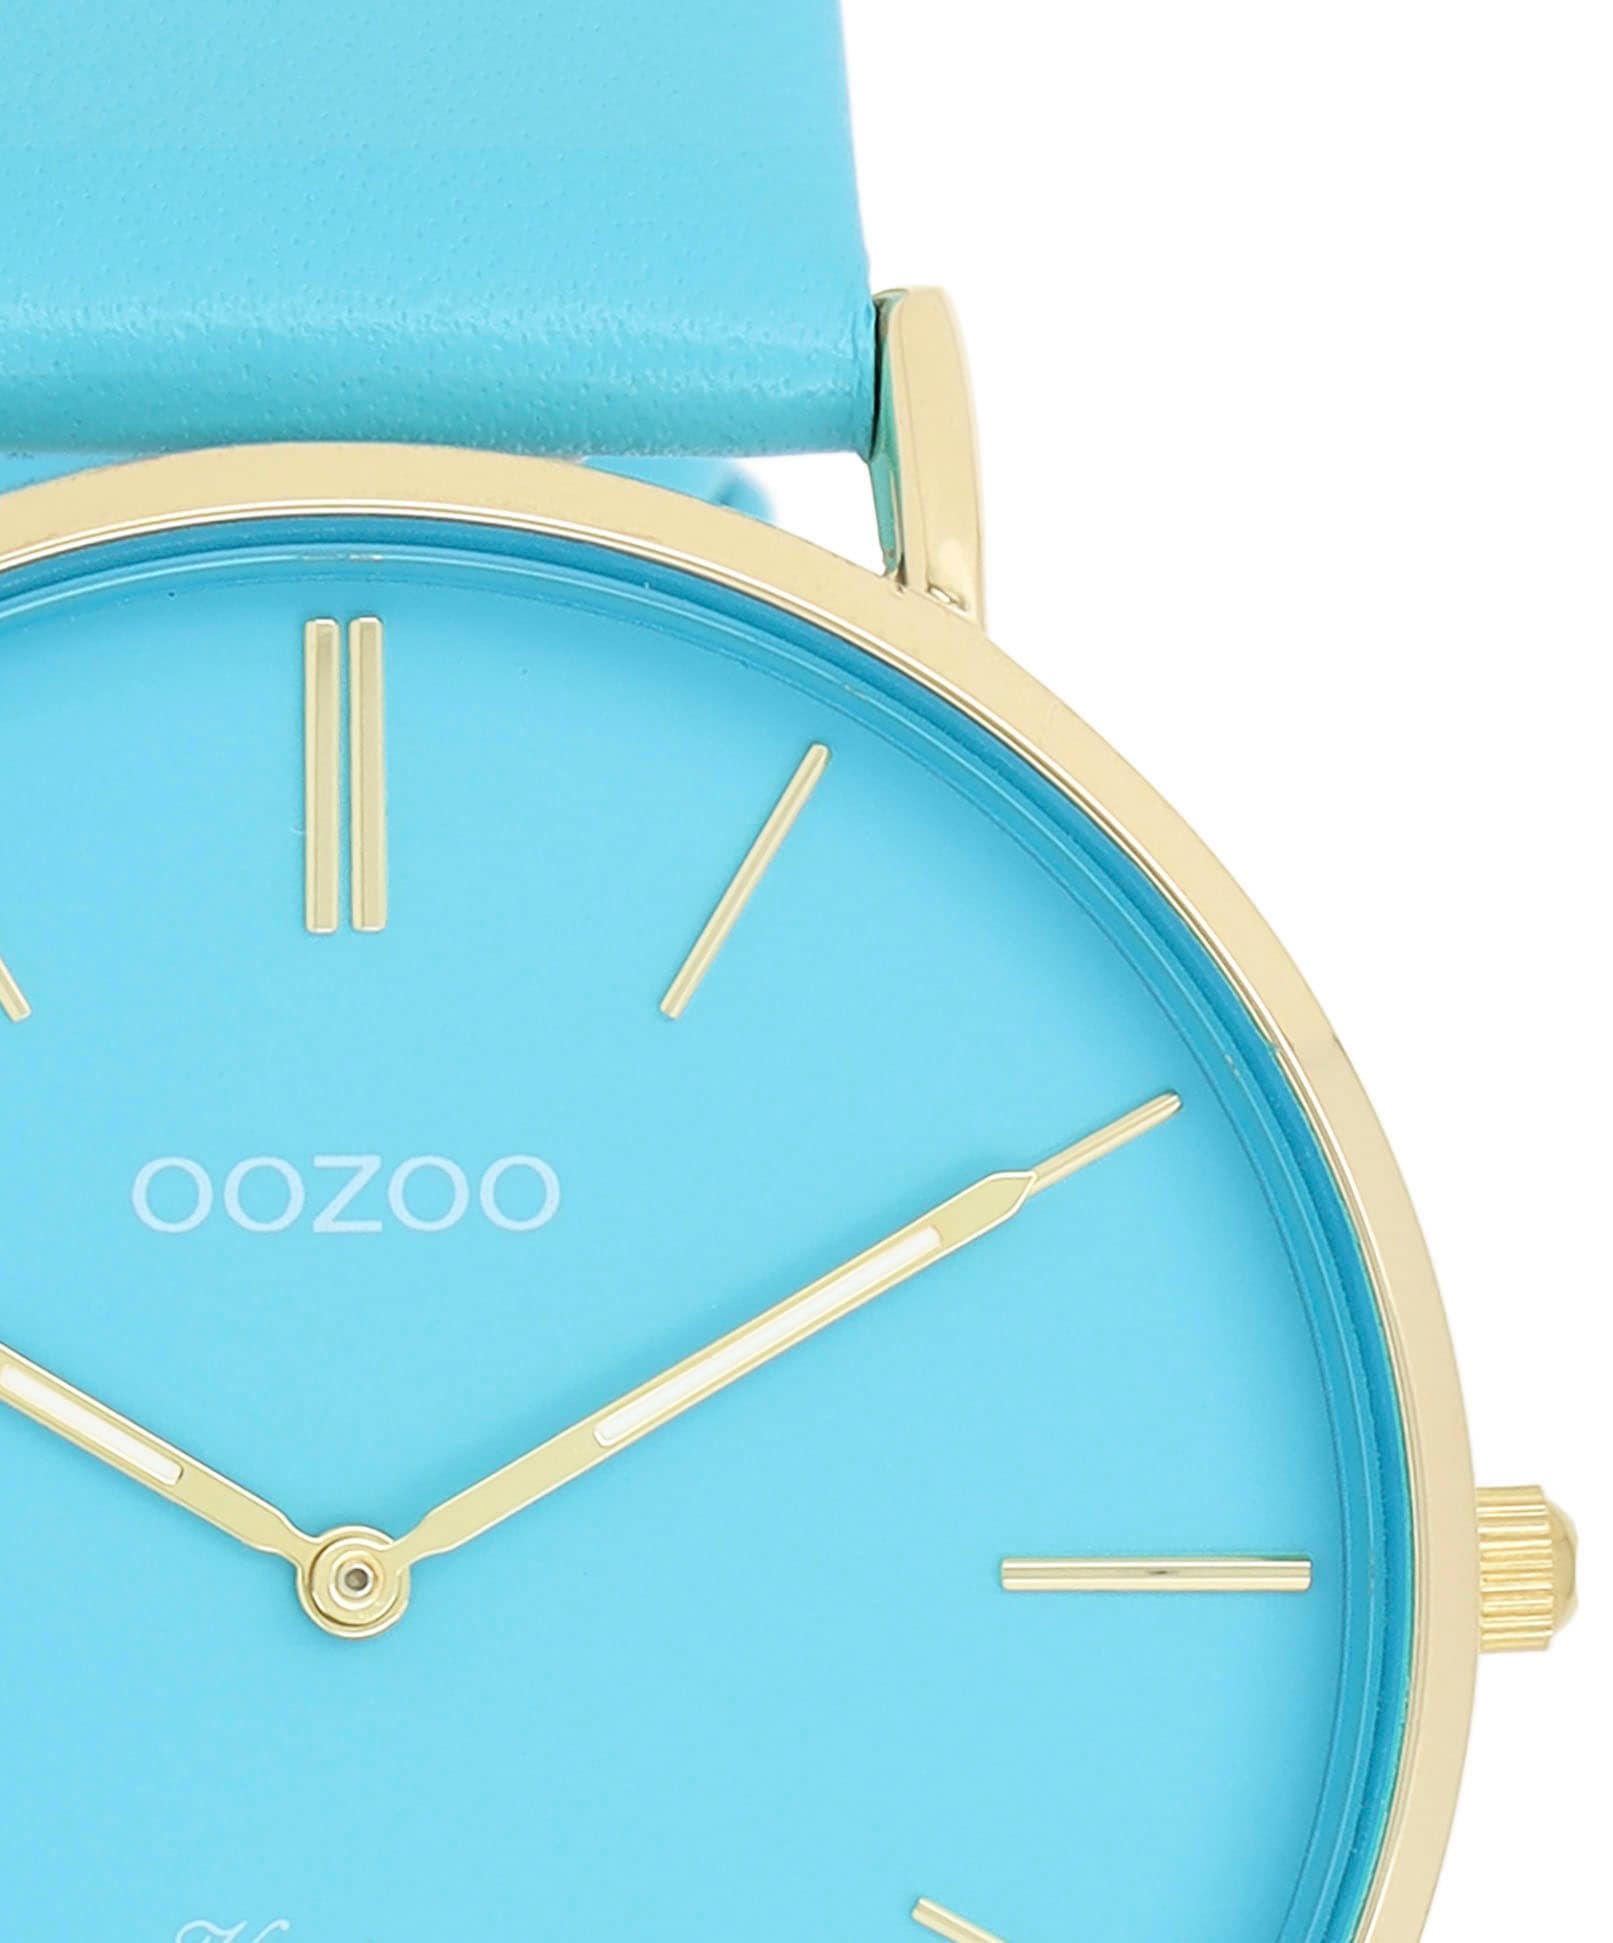 OOZOO Quarzuhr »C20323« online kaufen | BAUR